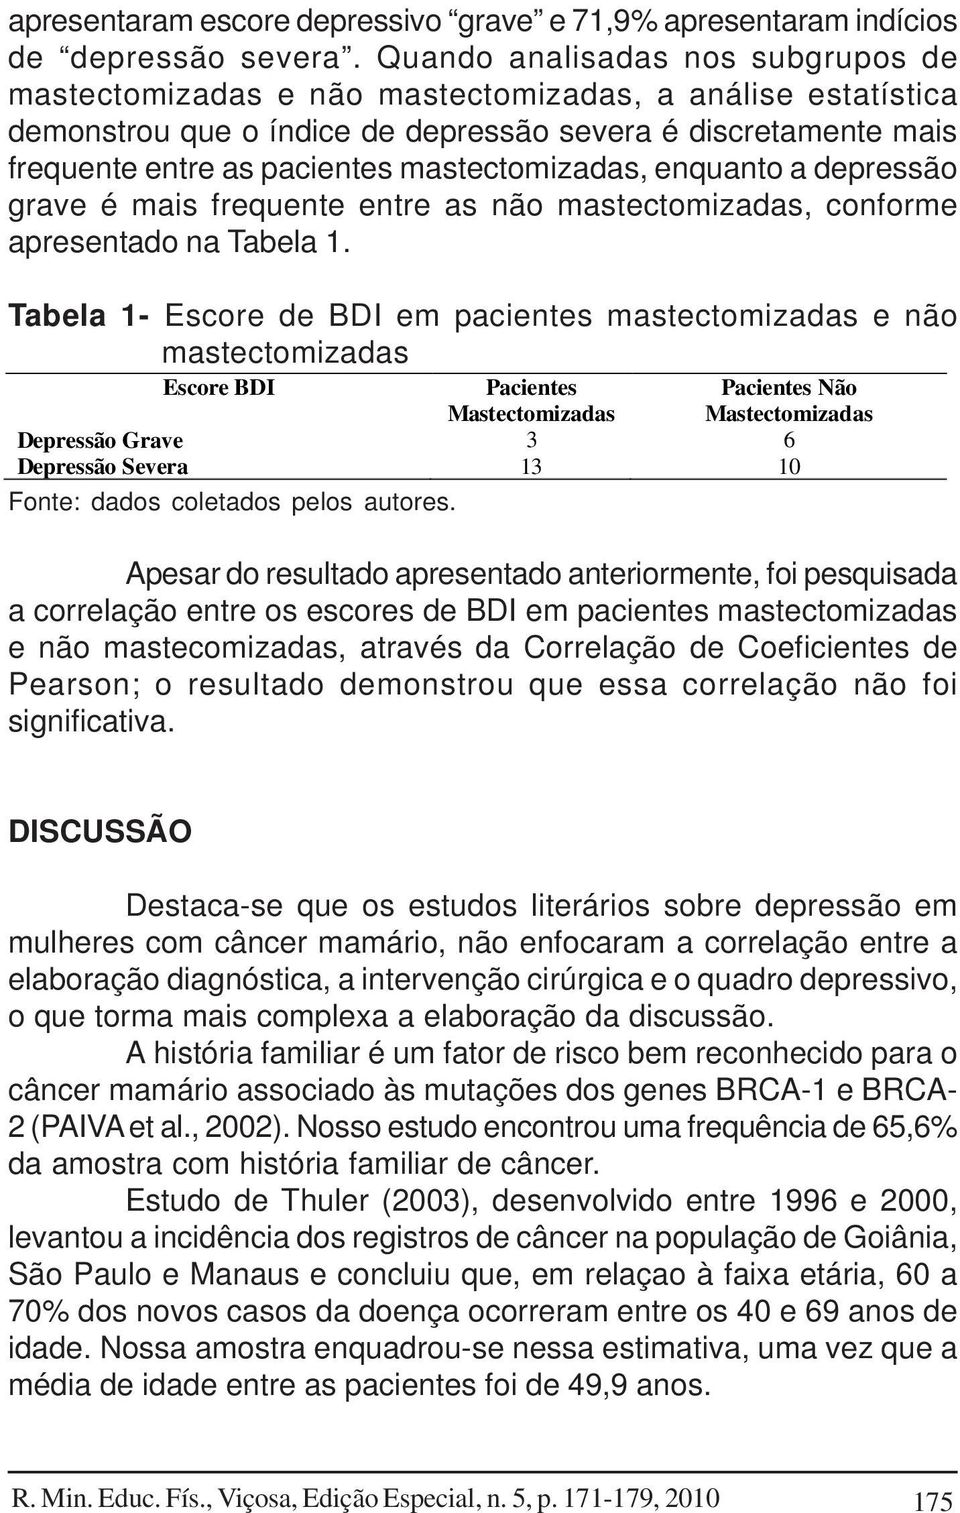 mastectomizadas, enquanto a depressão grave é mais frequente entre as não mastectomizadas, conforme apresentado na Tabela 1.